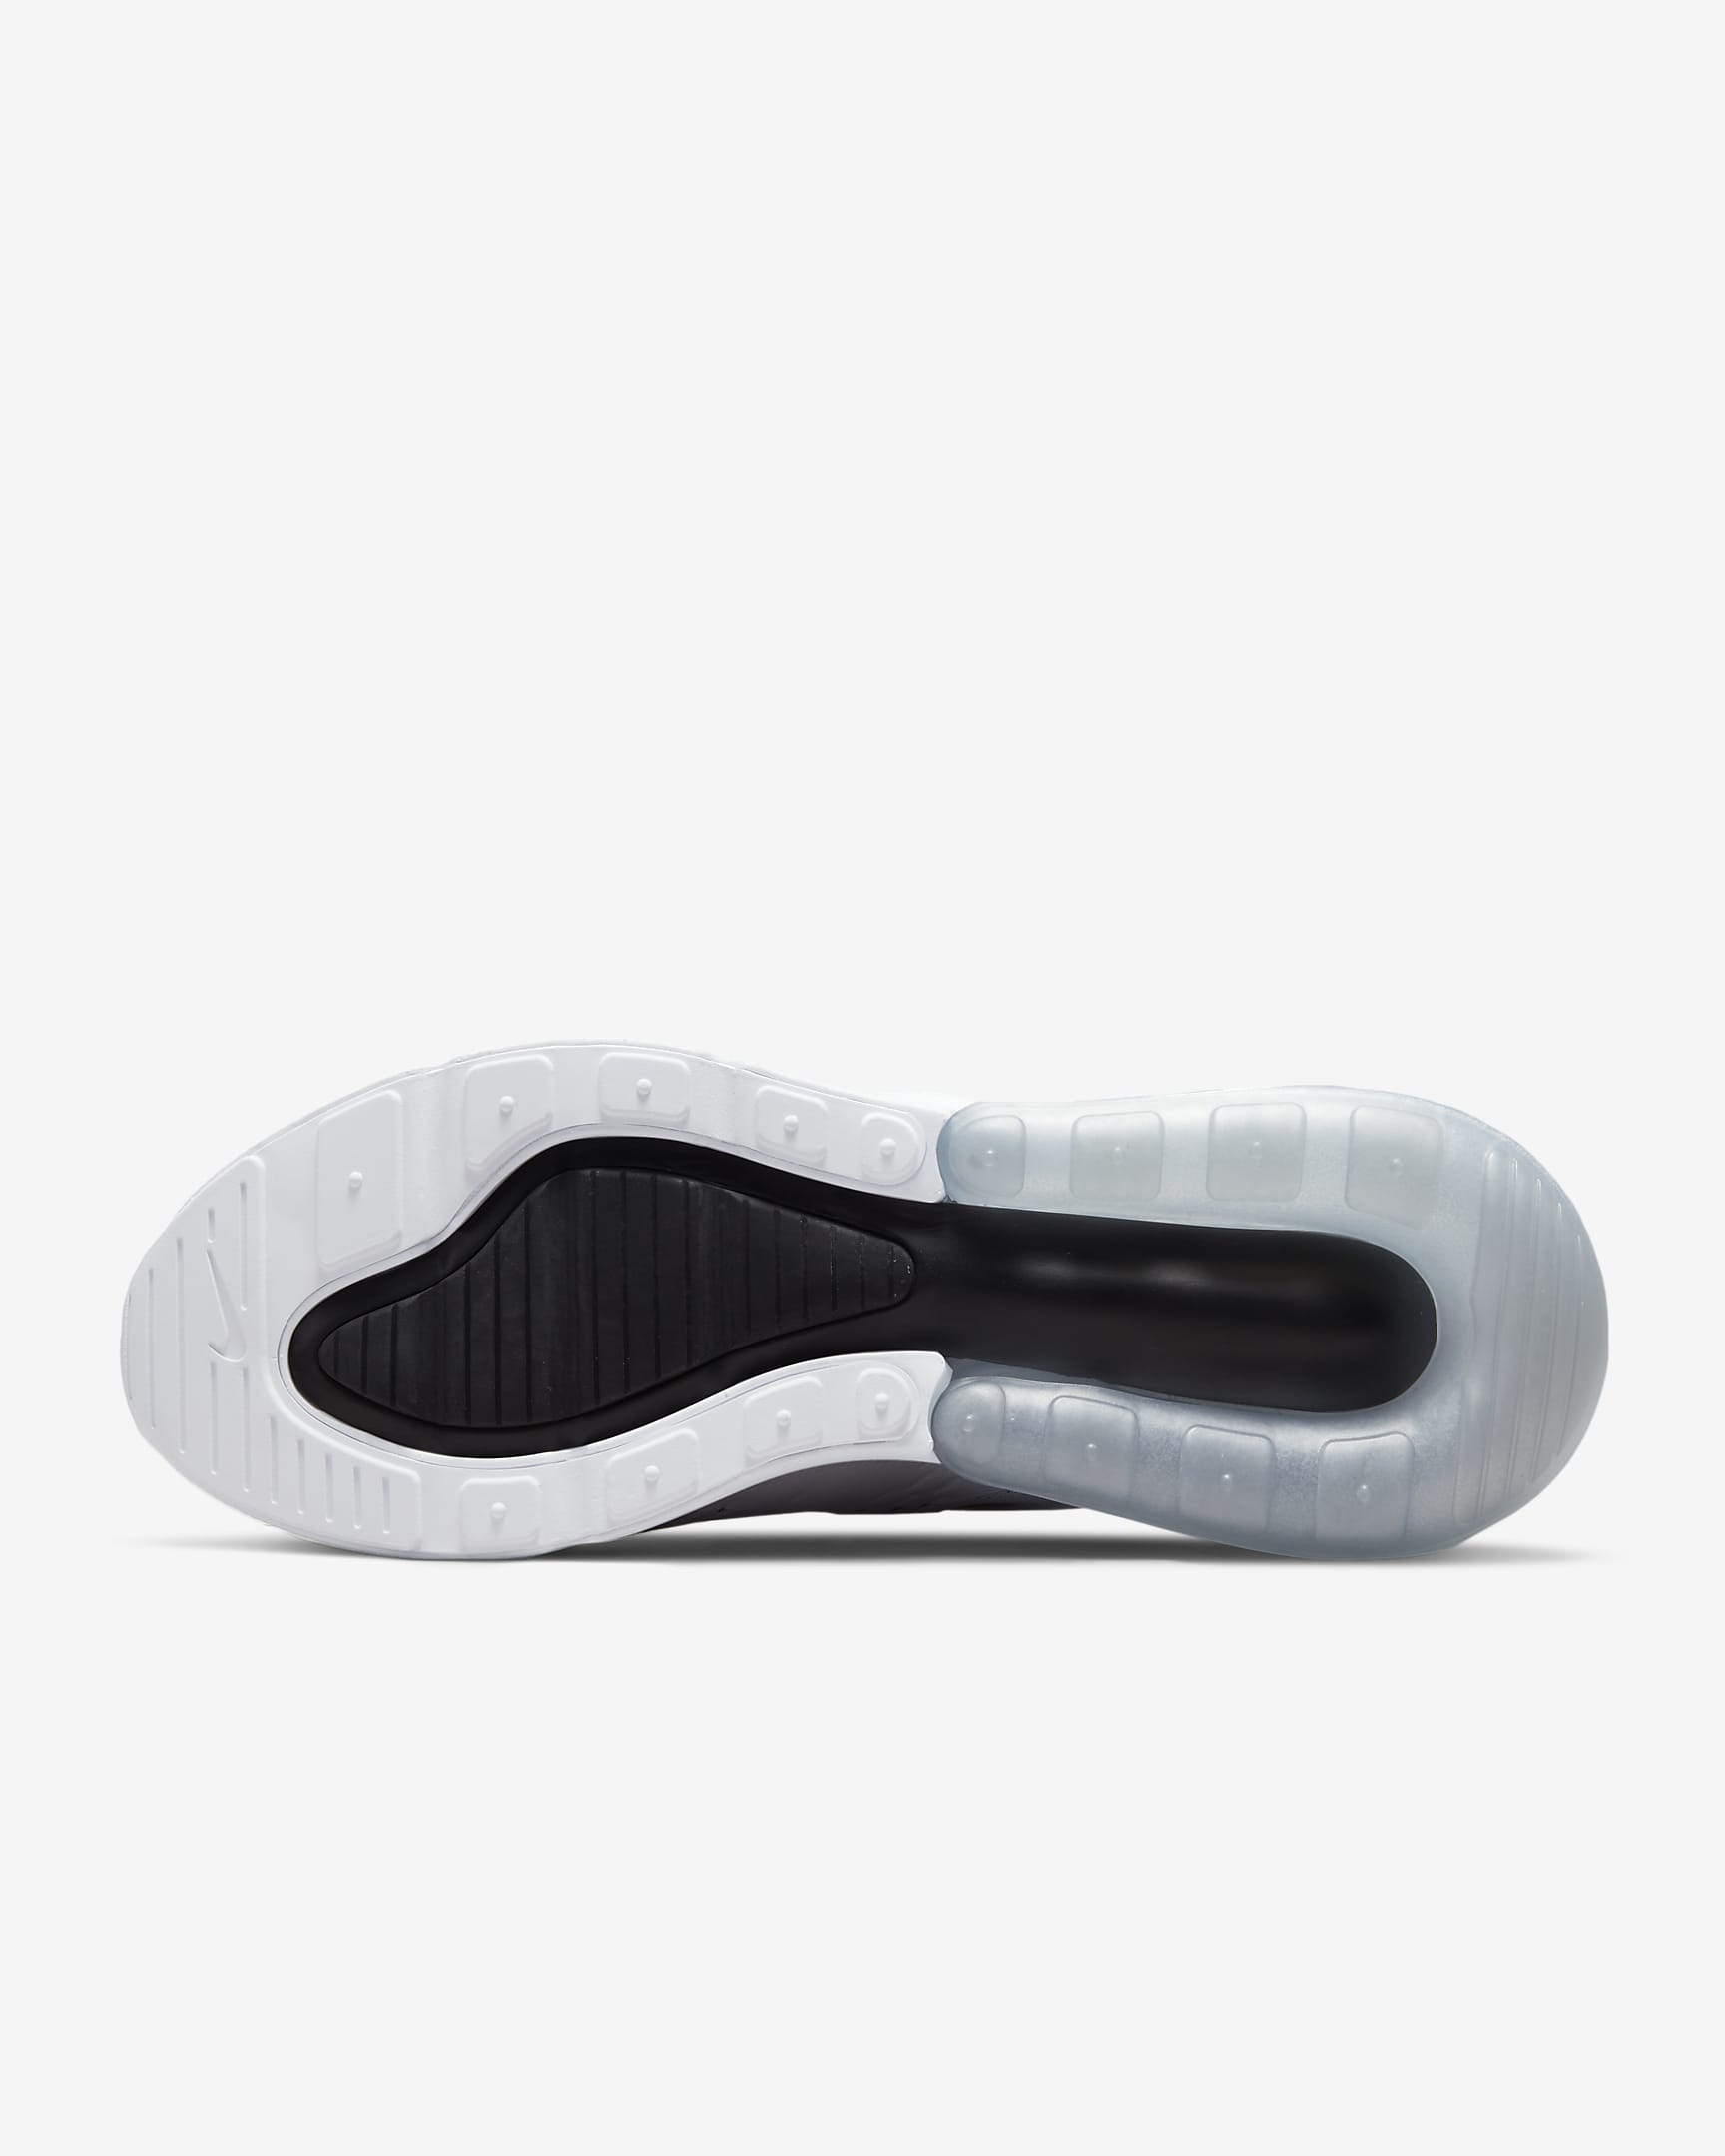 Chaussure Nike Air Max 270 pour femme - Blanc/Blanc/Noir